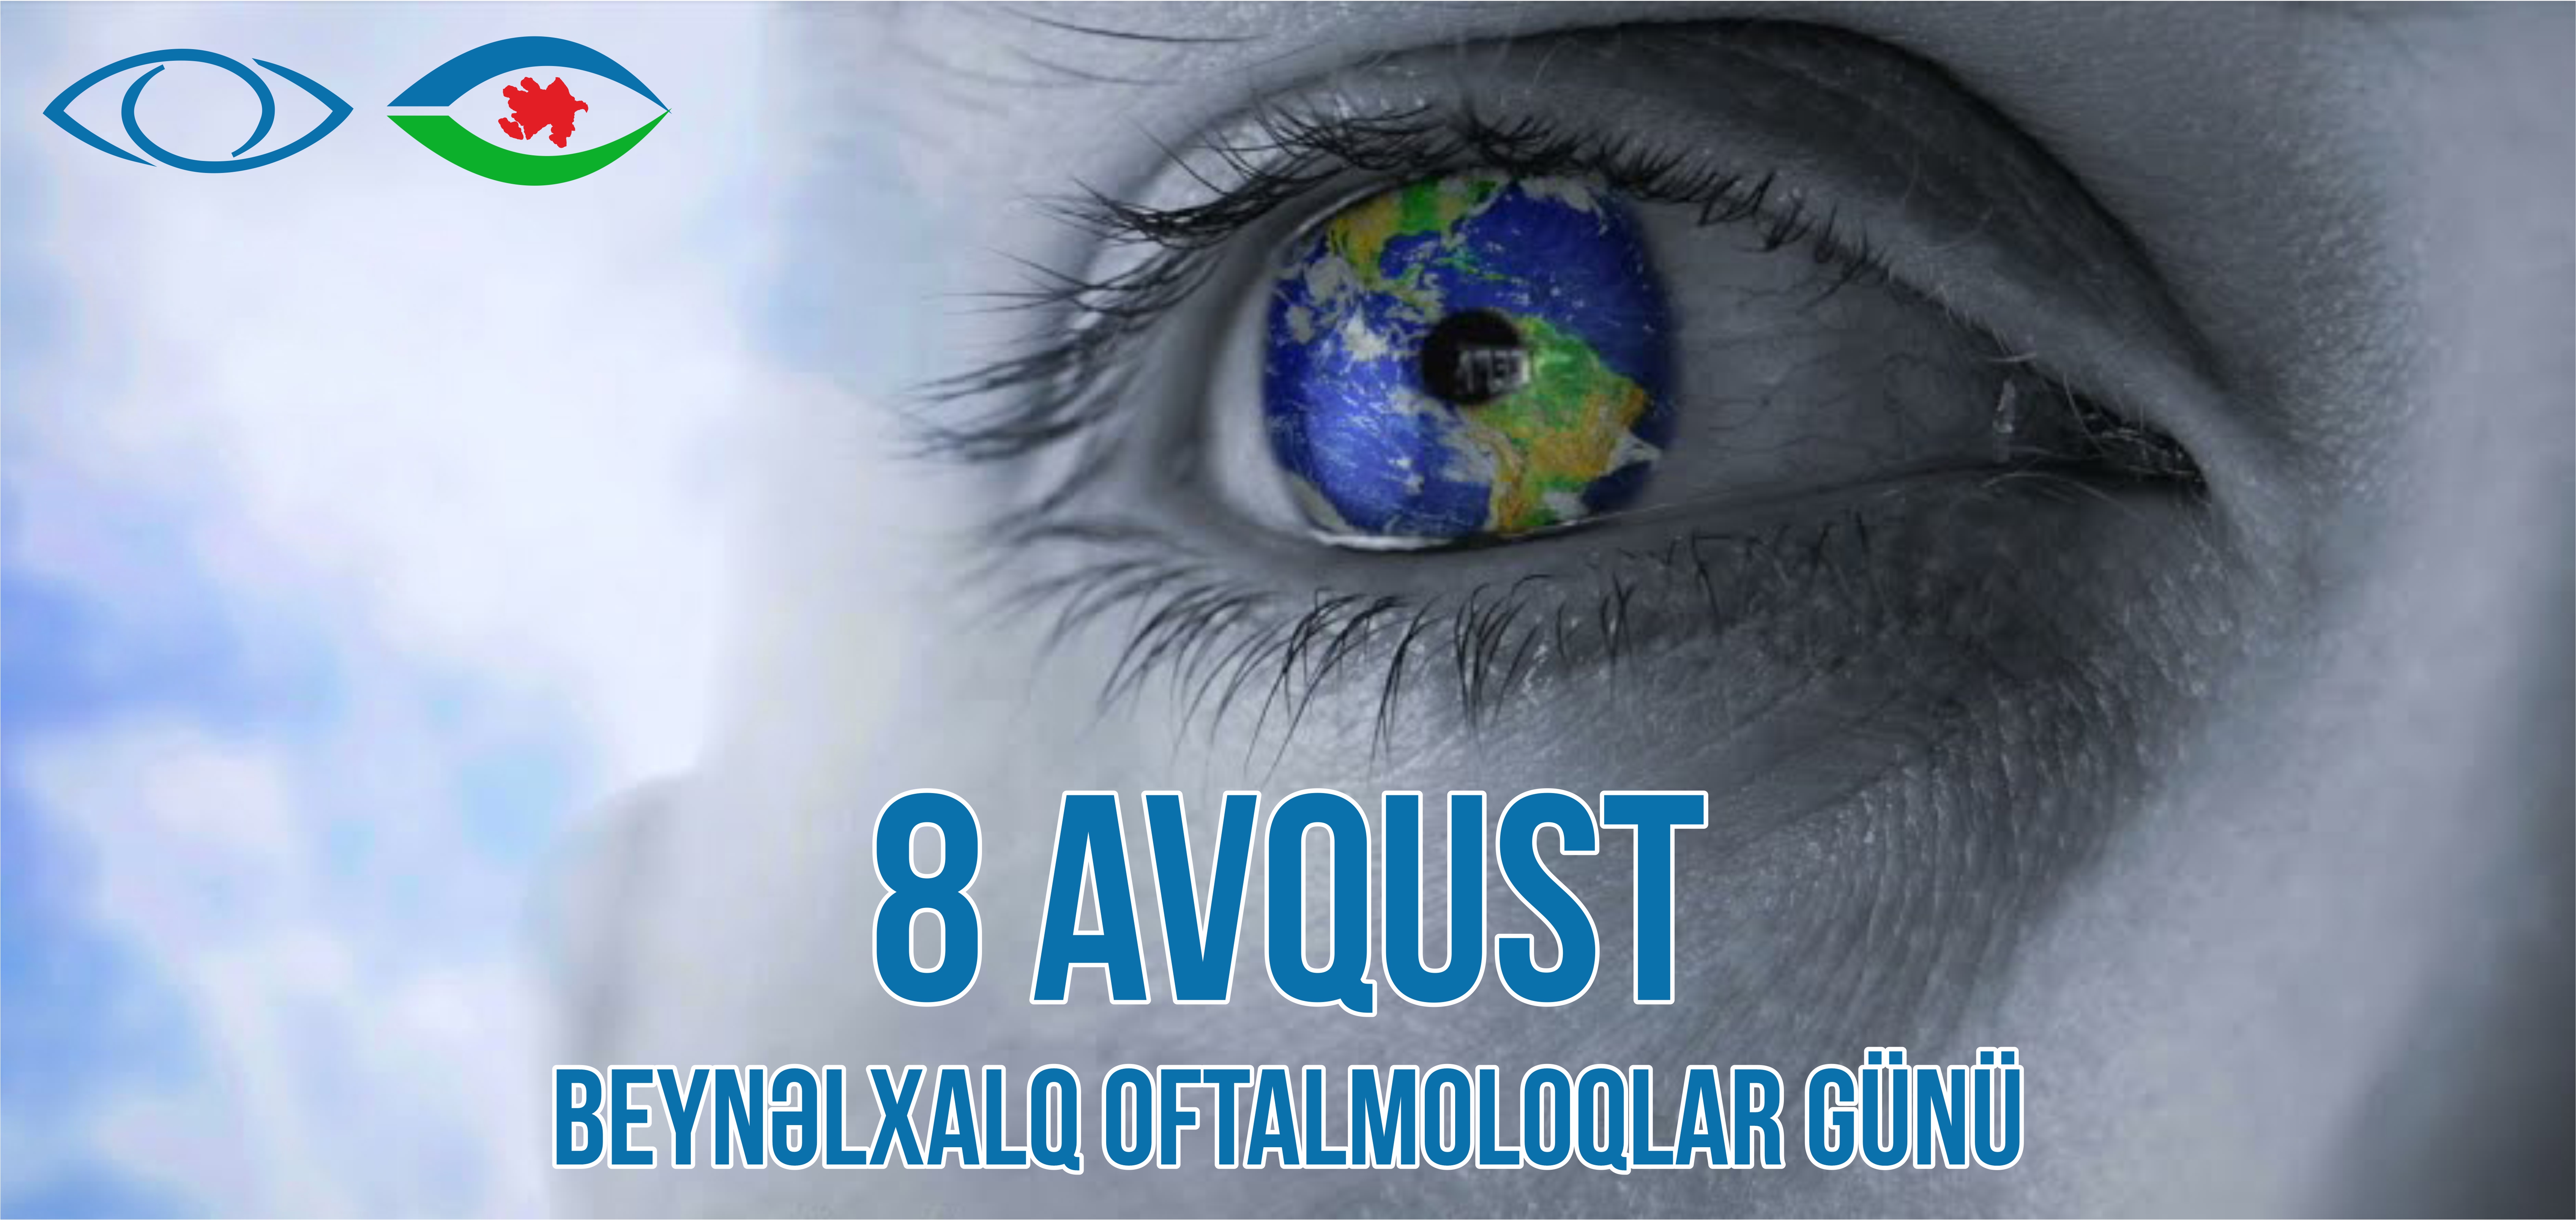 8 avqust – Beynəlxalq Oftalmoloqlar Günüdür!